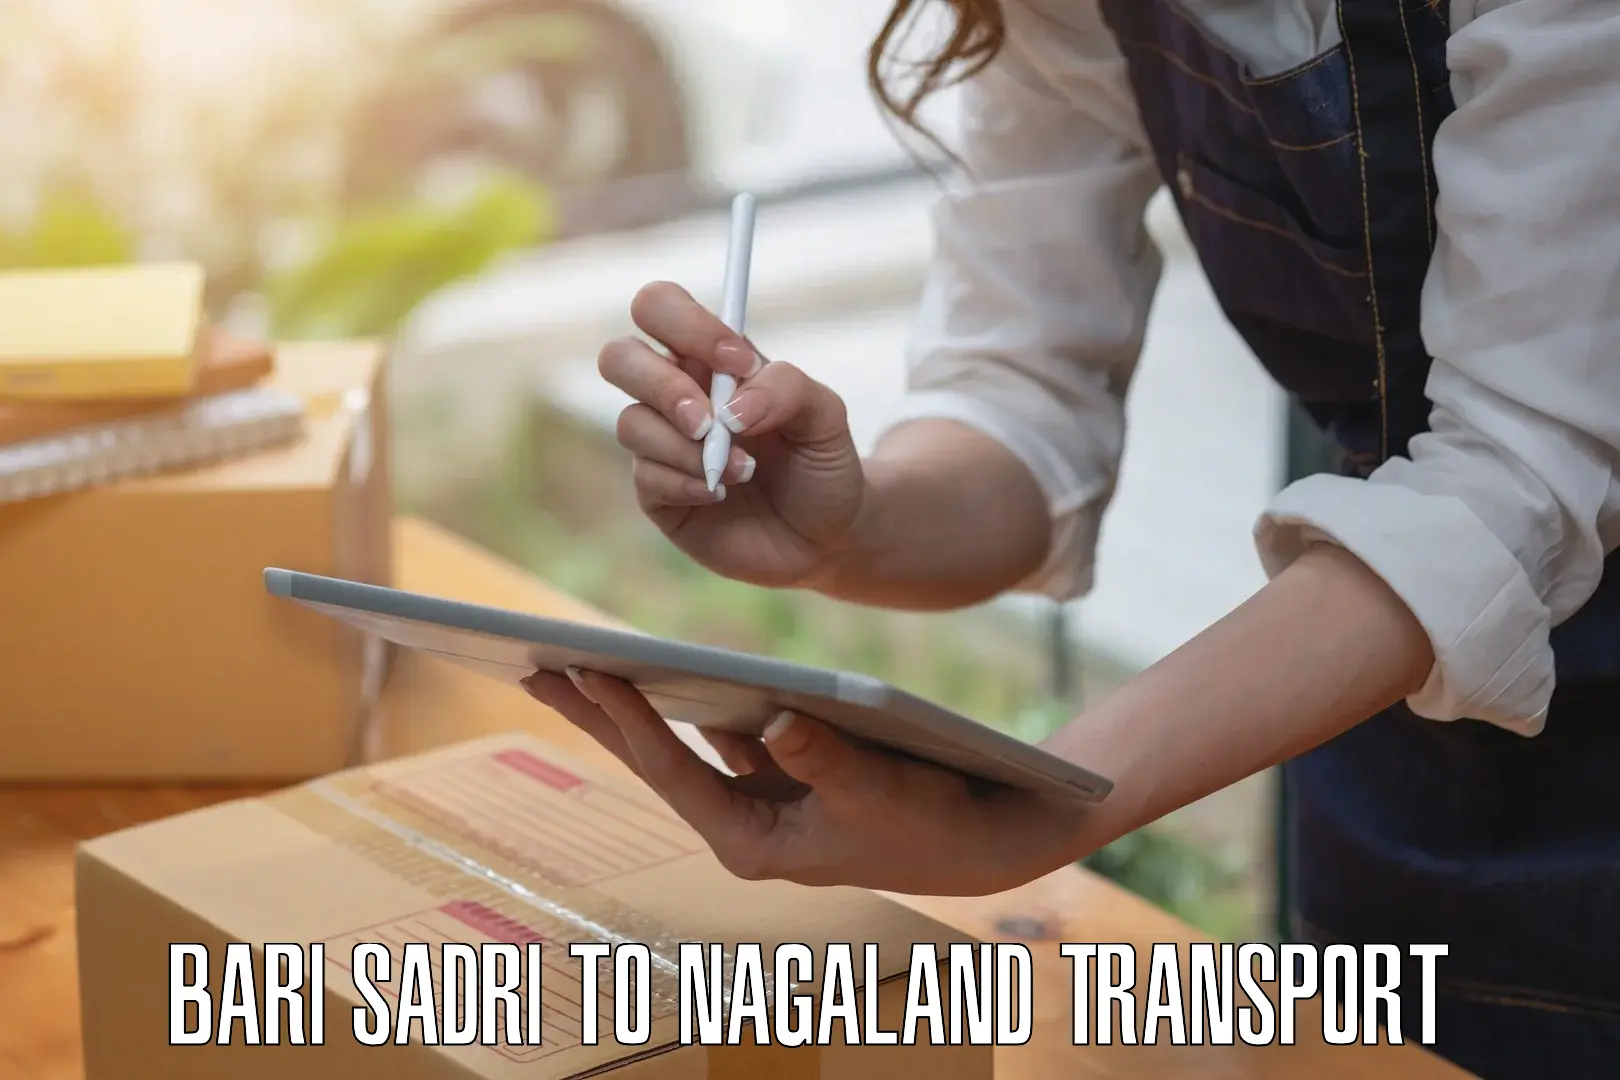 Daily transport service Bari Sadri to Nagaland